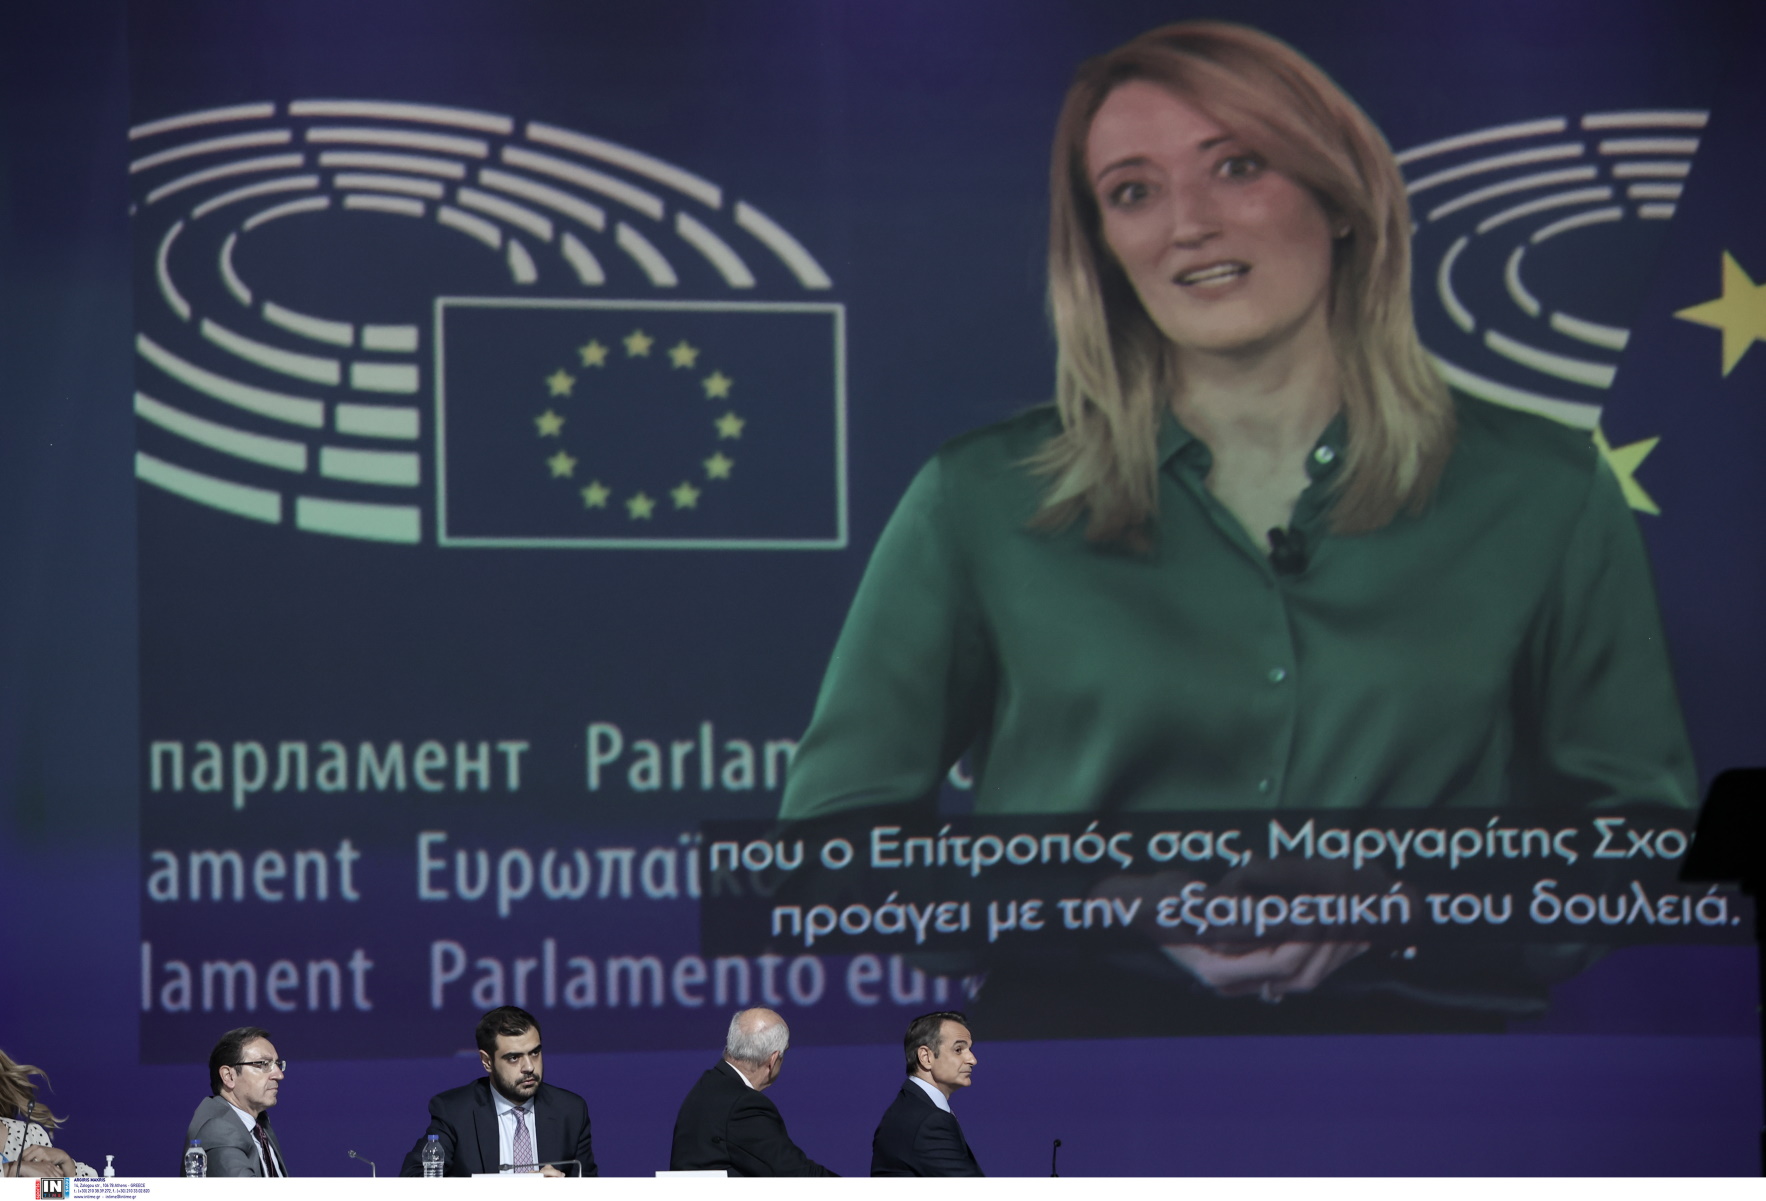 Συνέδριο ΝΔ – Ρομπέρτα Μετσόλα: Η κληρονομιά του κόμματος είναι συνδεδεμένη με την ευρωπαϊκή πορεία της Ελλάδας